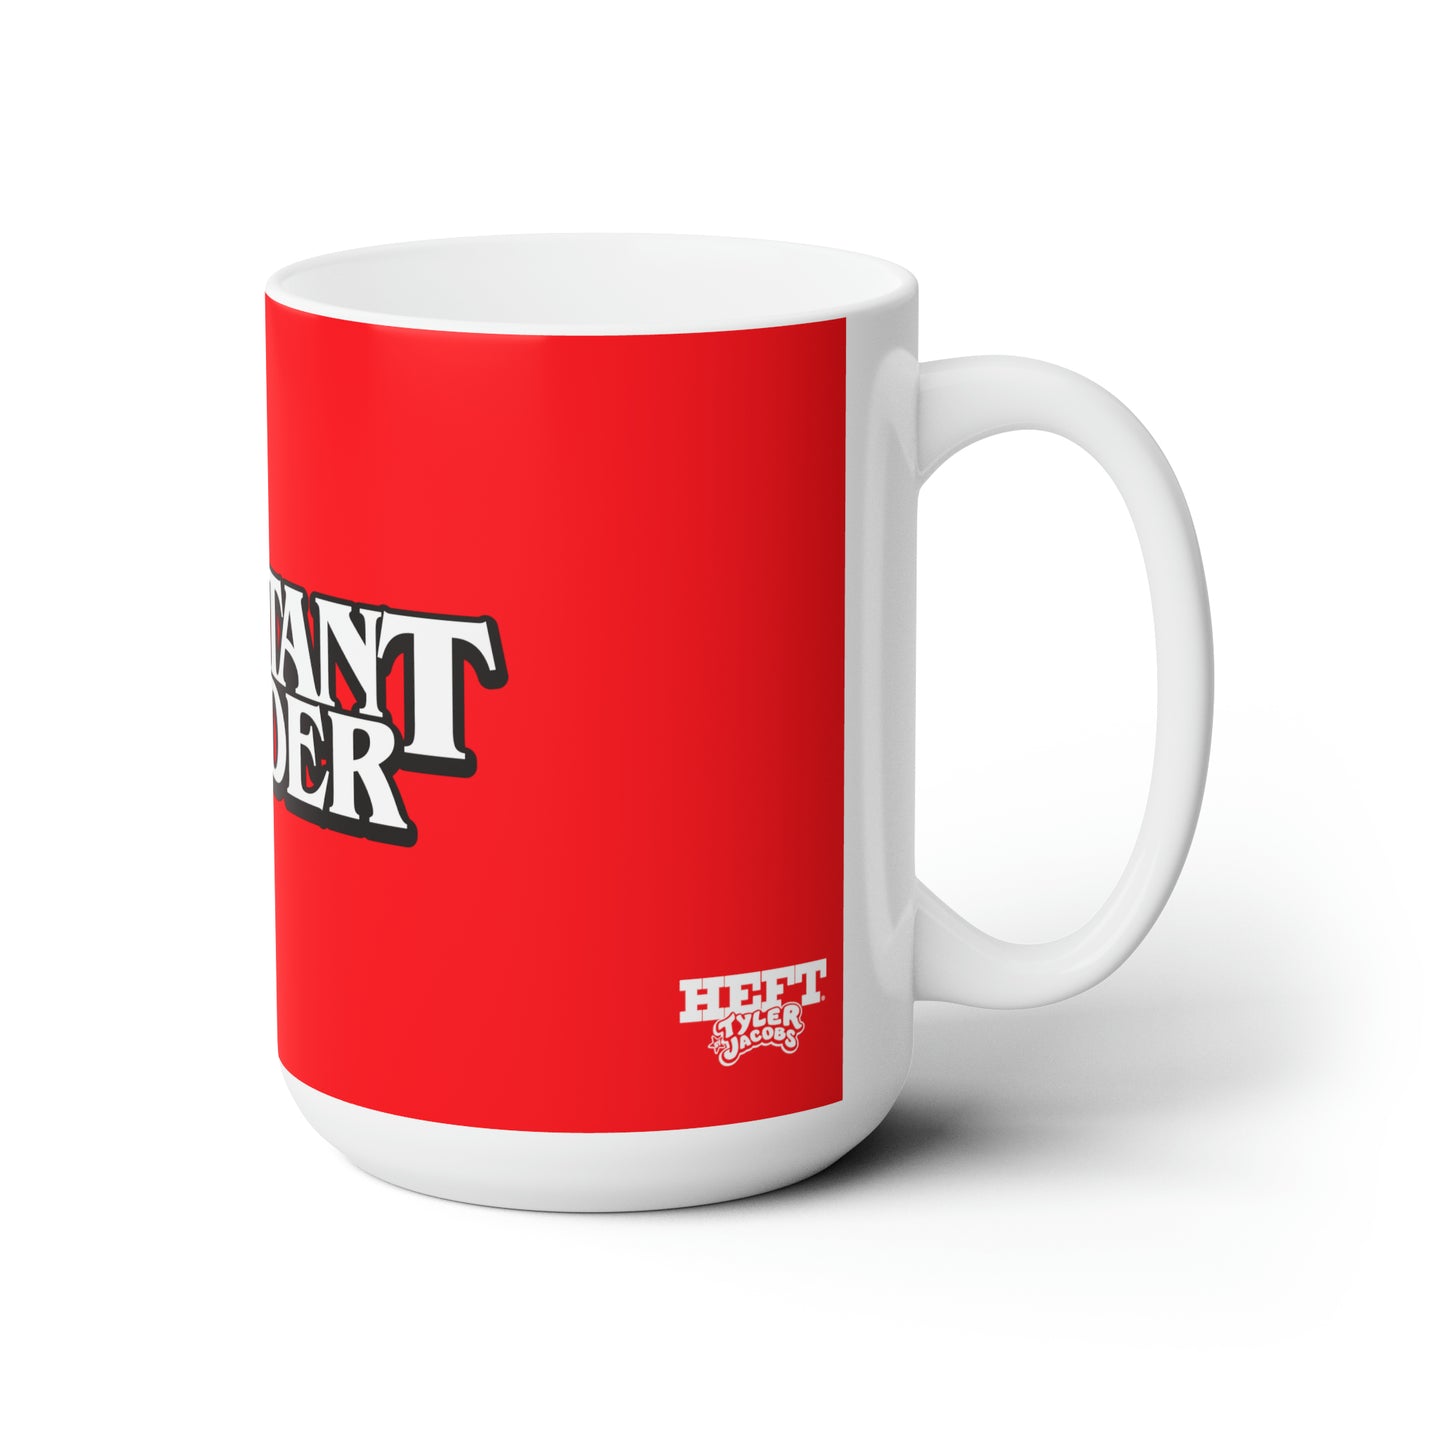 Constant Reader (red) - Ceramic Mug